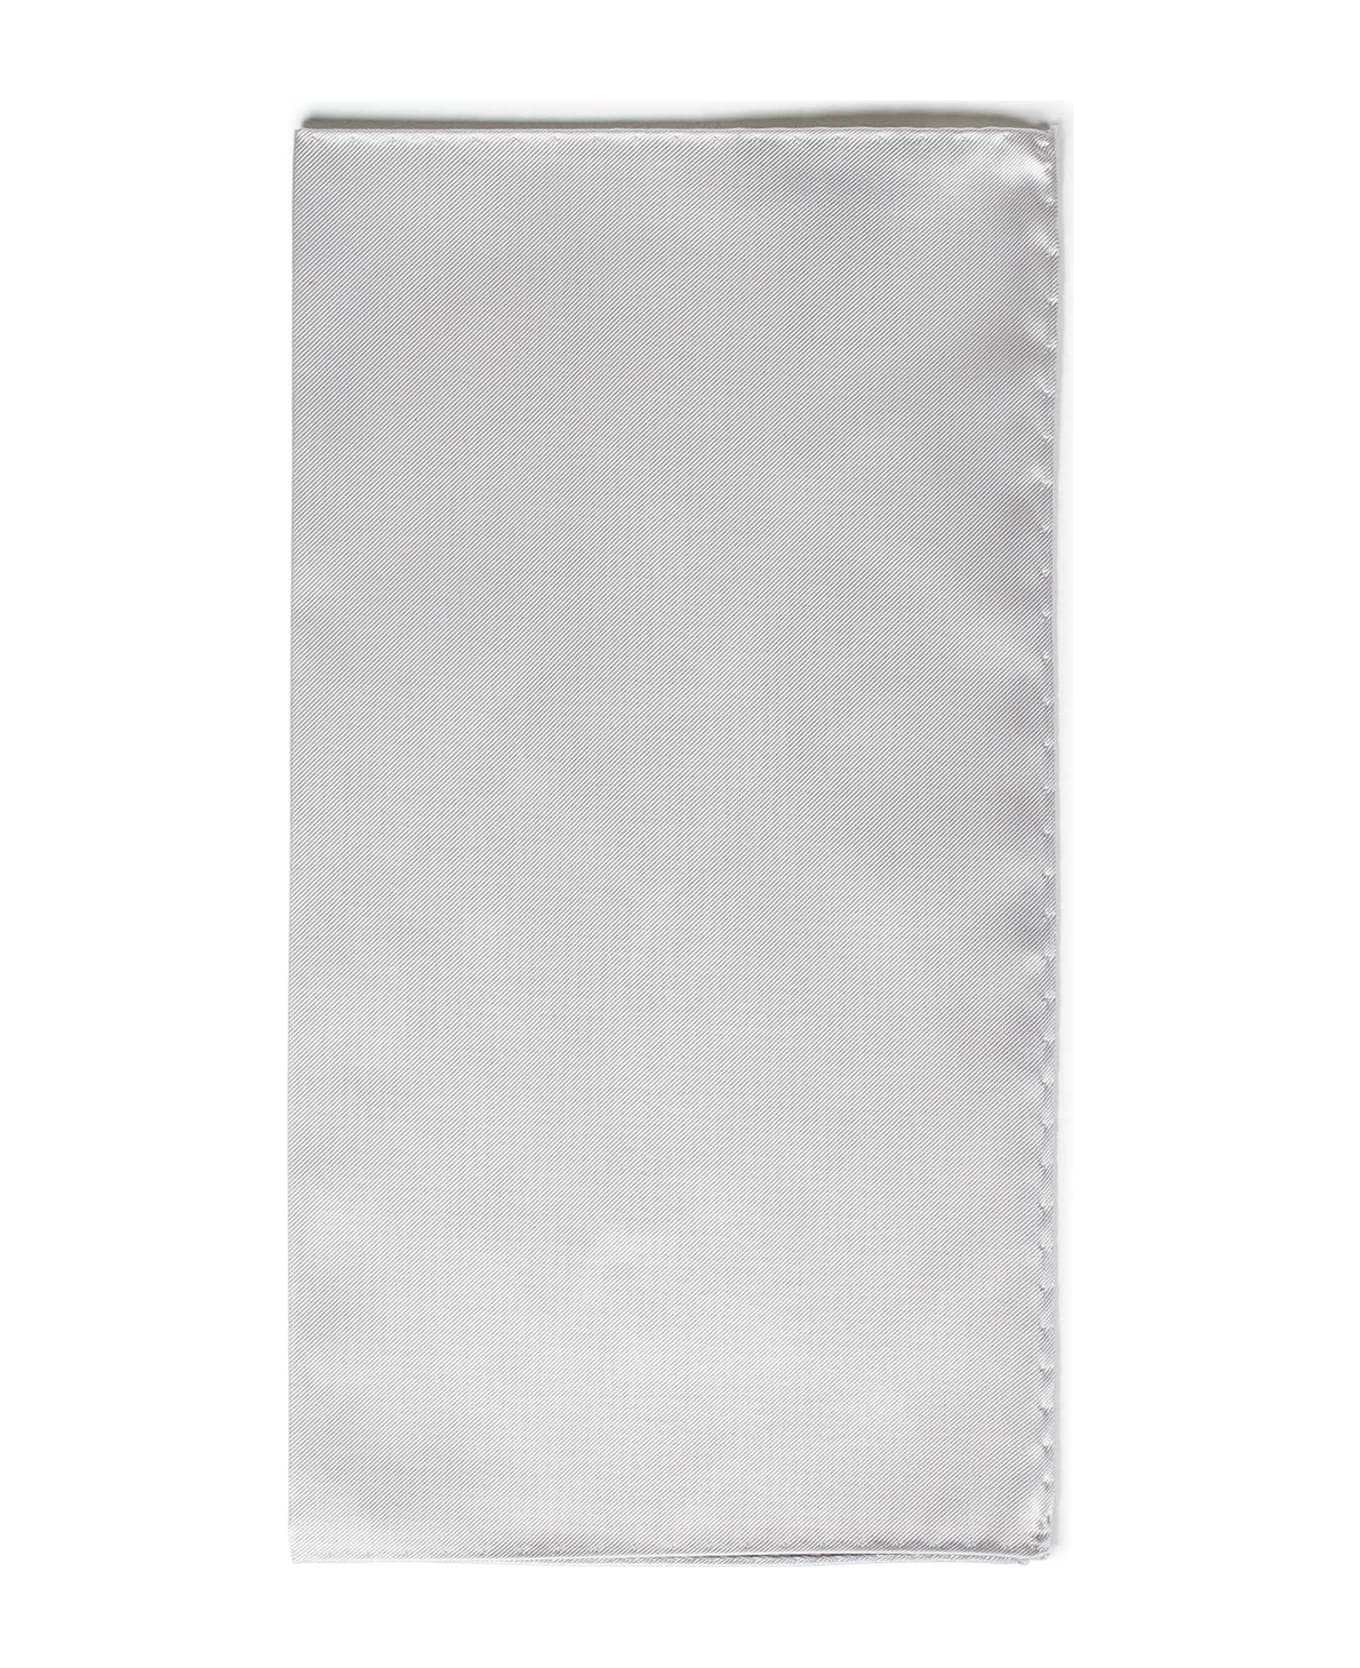 Emporio Armani Tissue - White